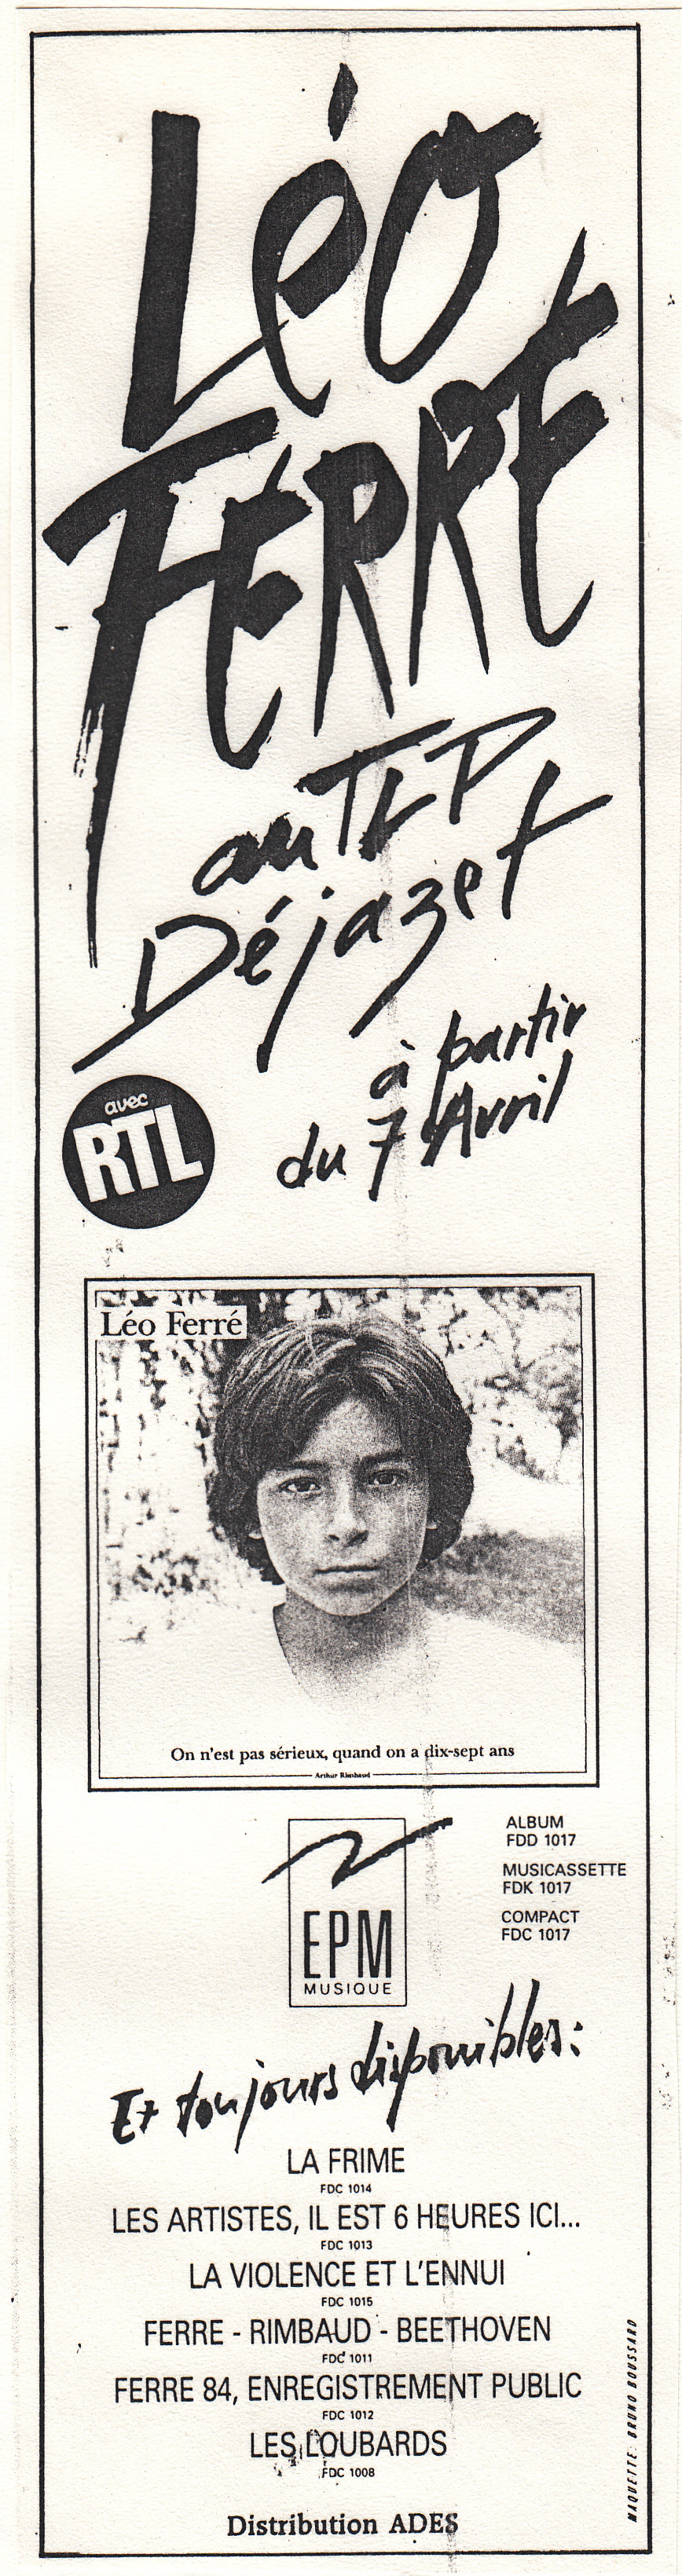 Léo Ferré - LL'Événement du jeudi du 31/03 au 06/04/1988